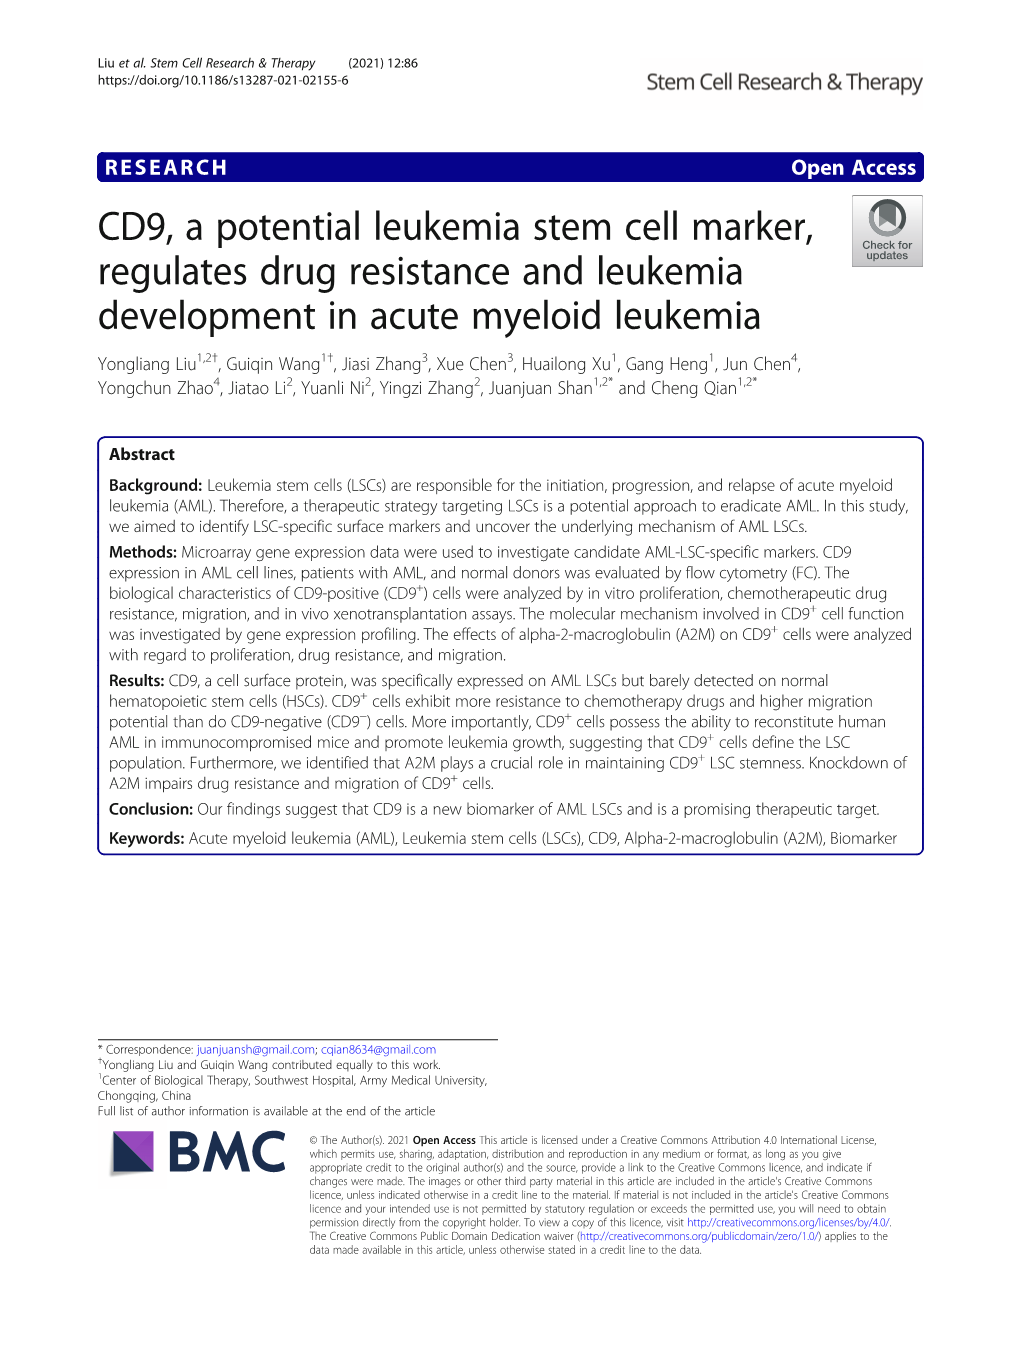 CD9, a Potential Leukemia Stem Cell Marker, Regulates Drug Resistance